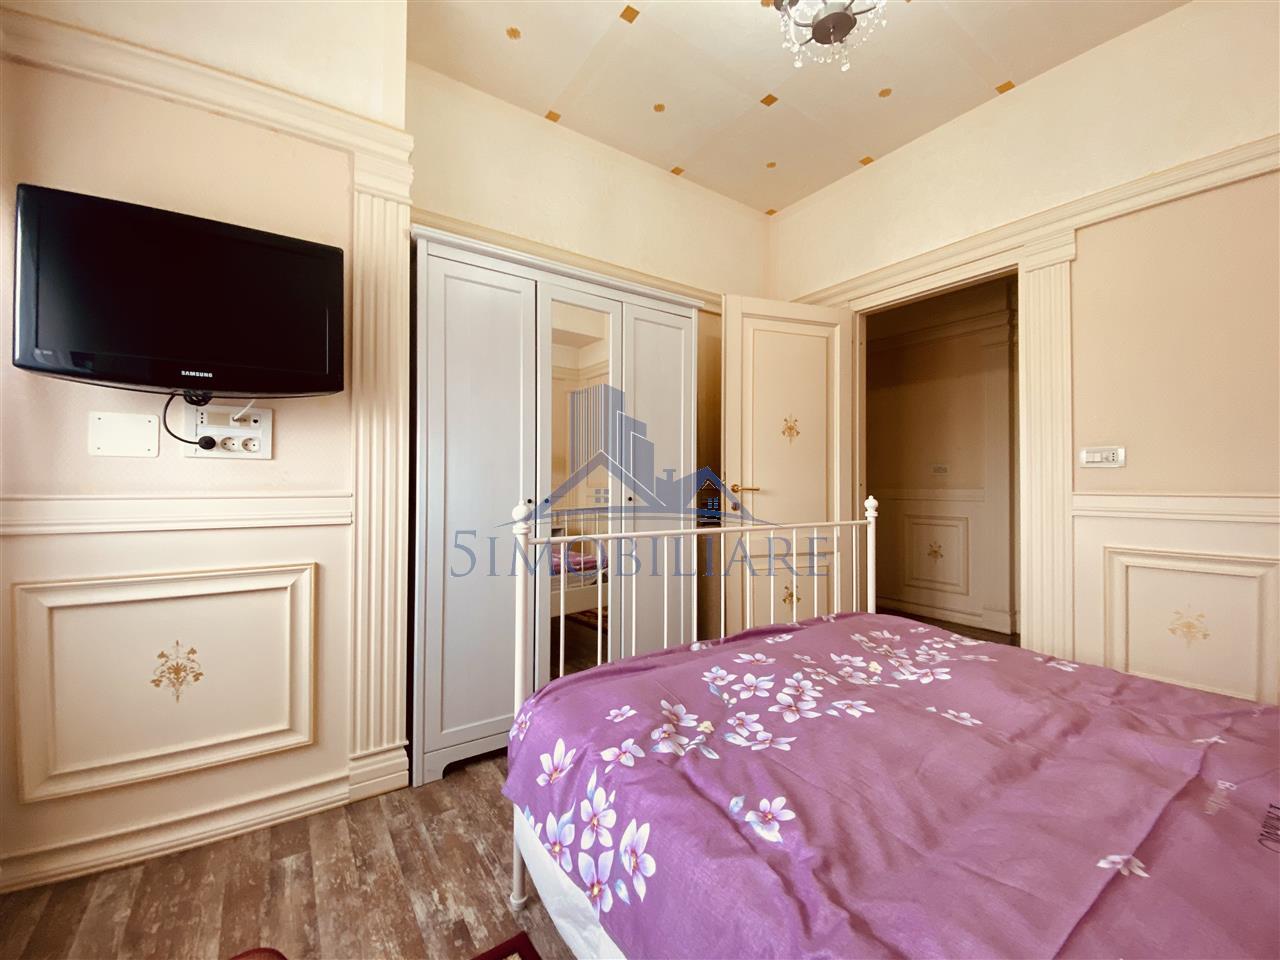 Apartament elegant 3 camere Baneasa -Tur Video atasat